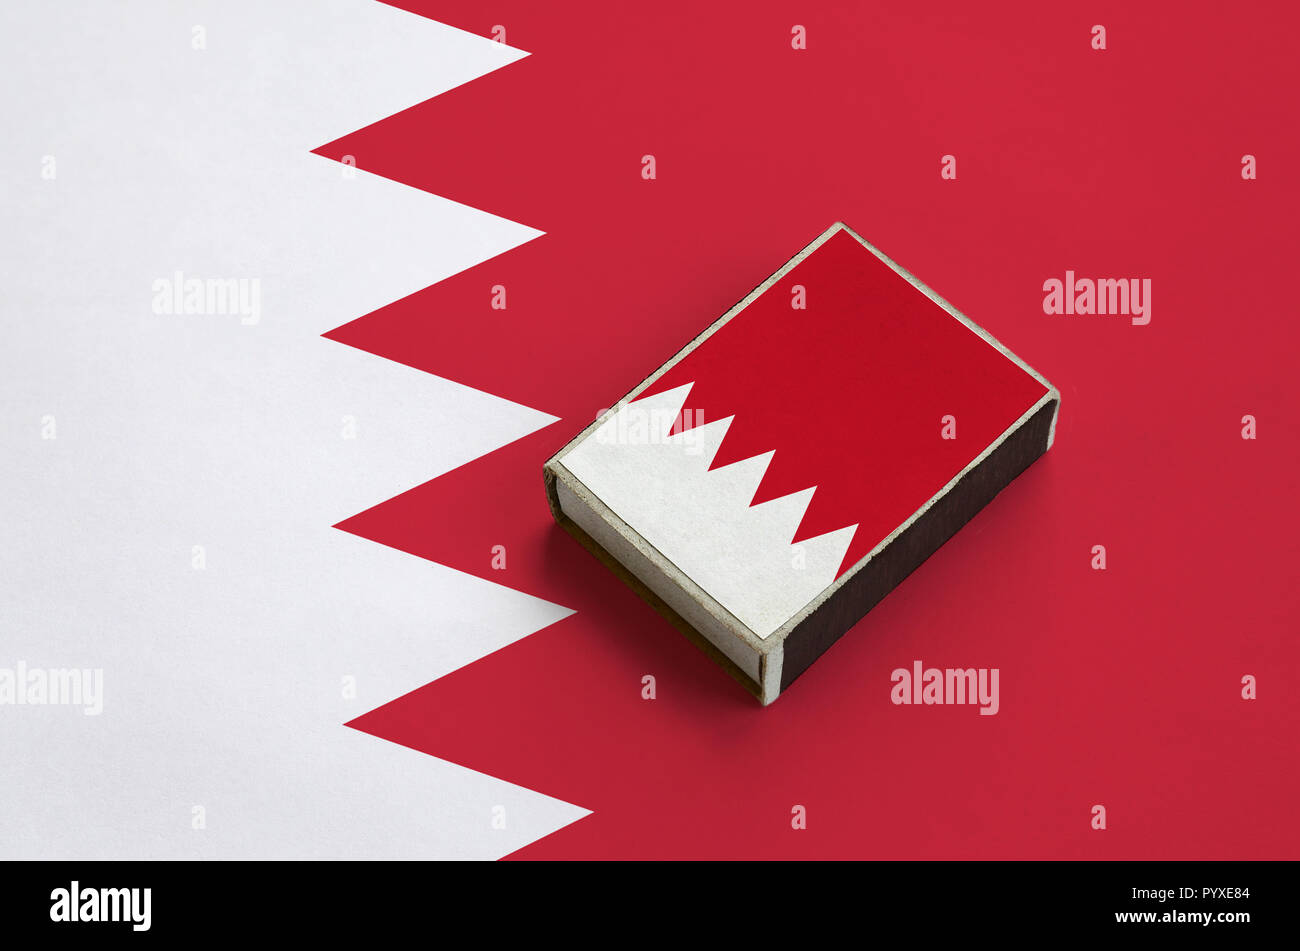 Drapeau de Bahreïn est représenté sur une boîte d'allumettes qui se trouve sur un grand drapeau. Banque D'Images